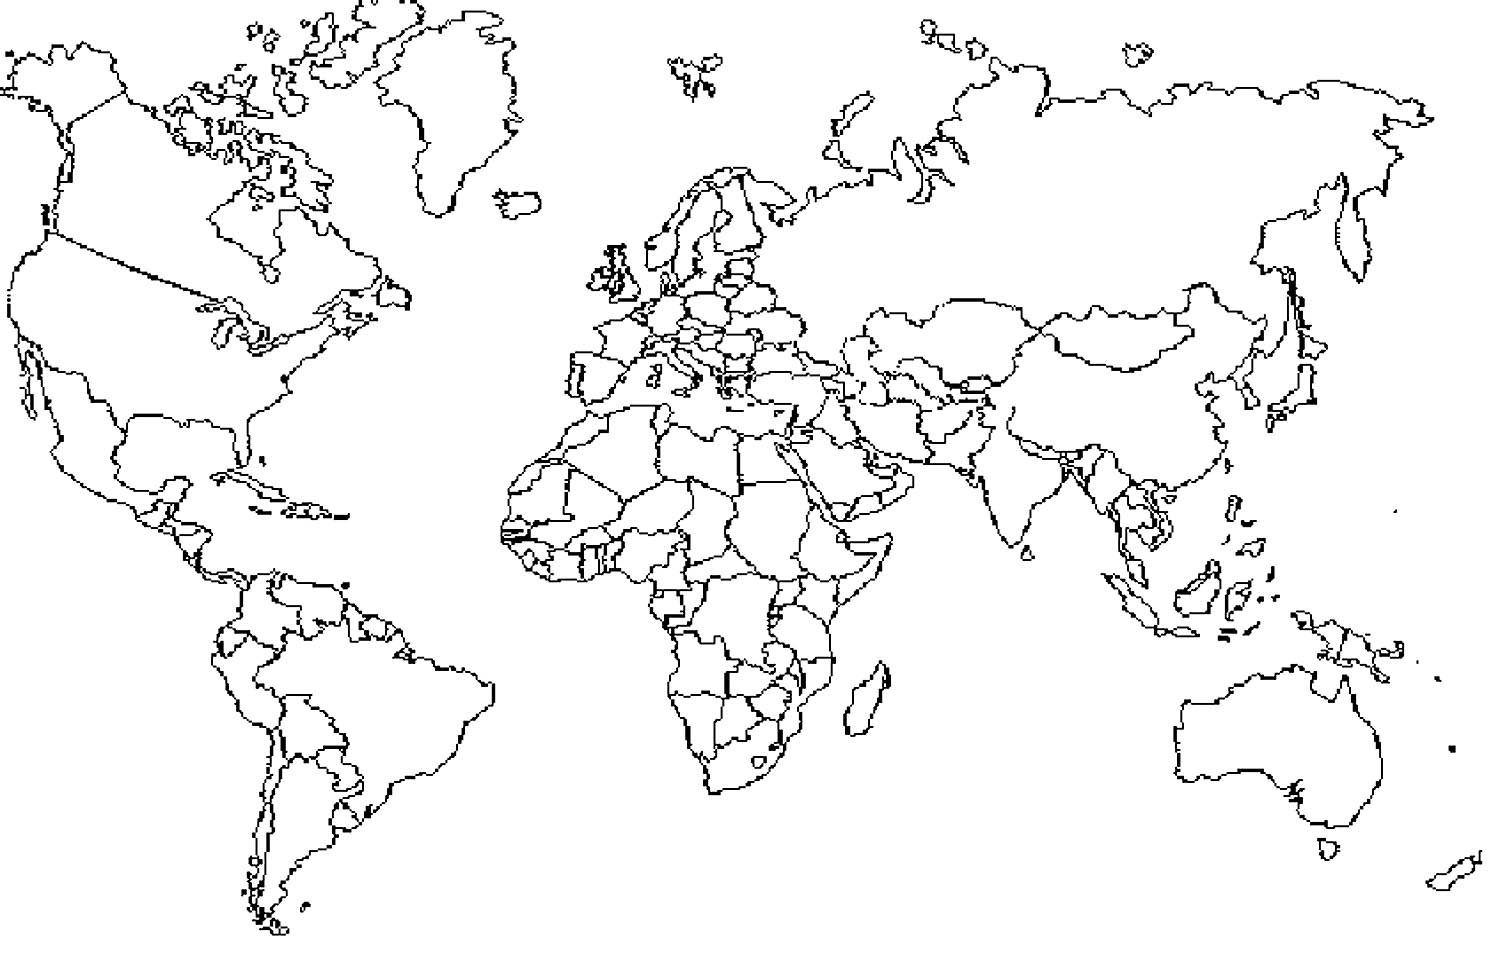 Контурная карта мира с границами стран